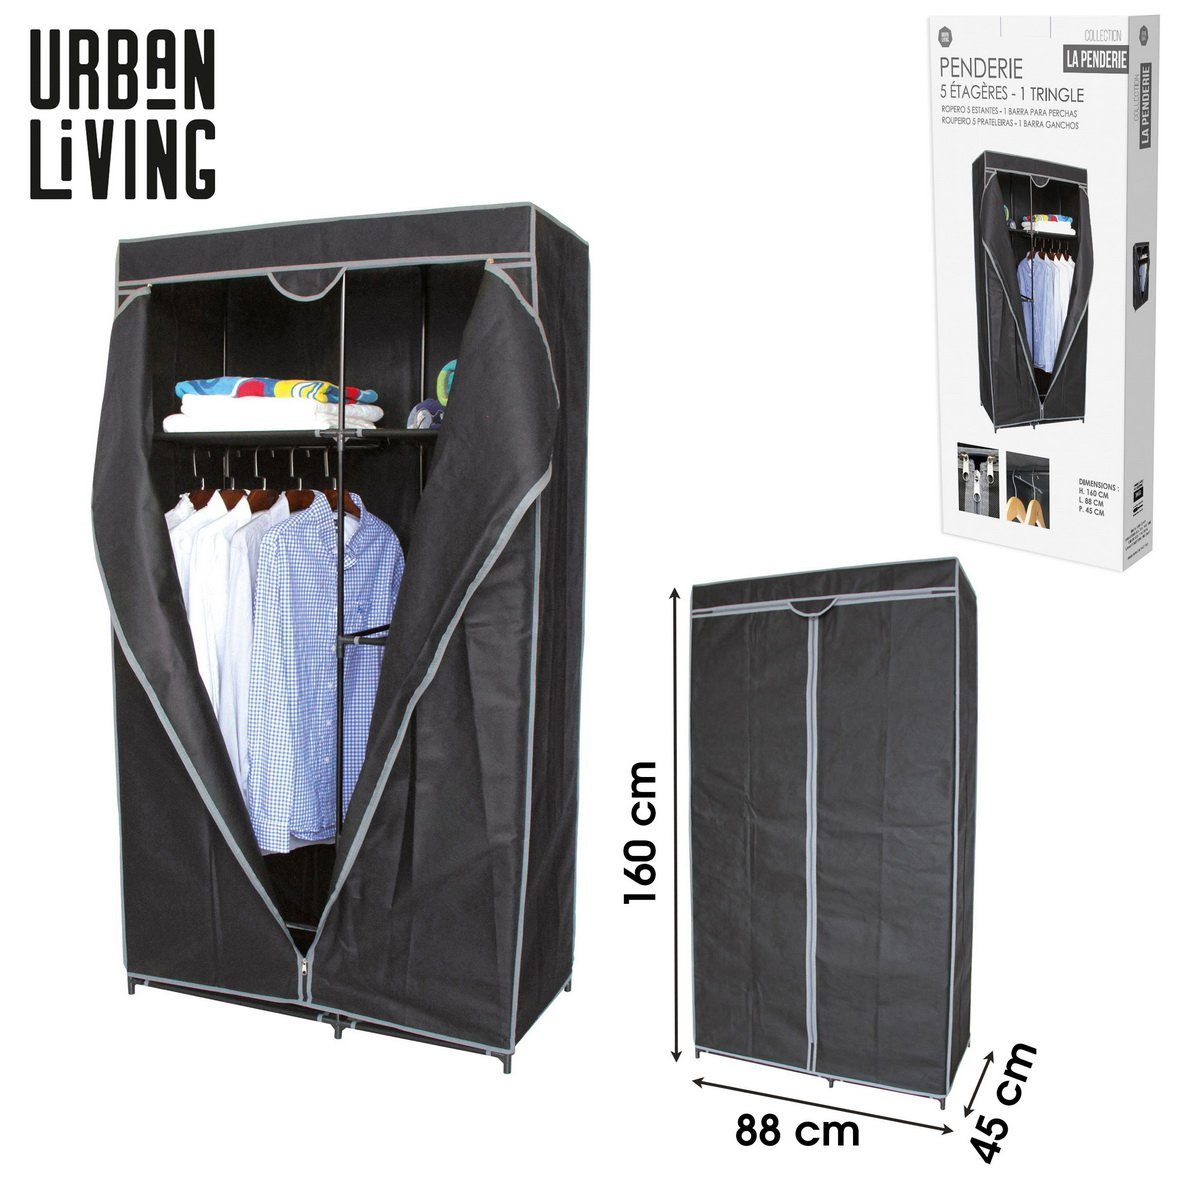 Urban Living Kleiderschrank Faltschrank Garderobe 88x45x160cm LA PENDERIE Flurschrank mit 5 Regalen, Kleiderstange, Falt-Tür zum Hochziehen